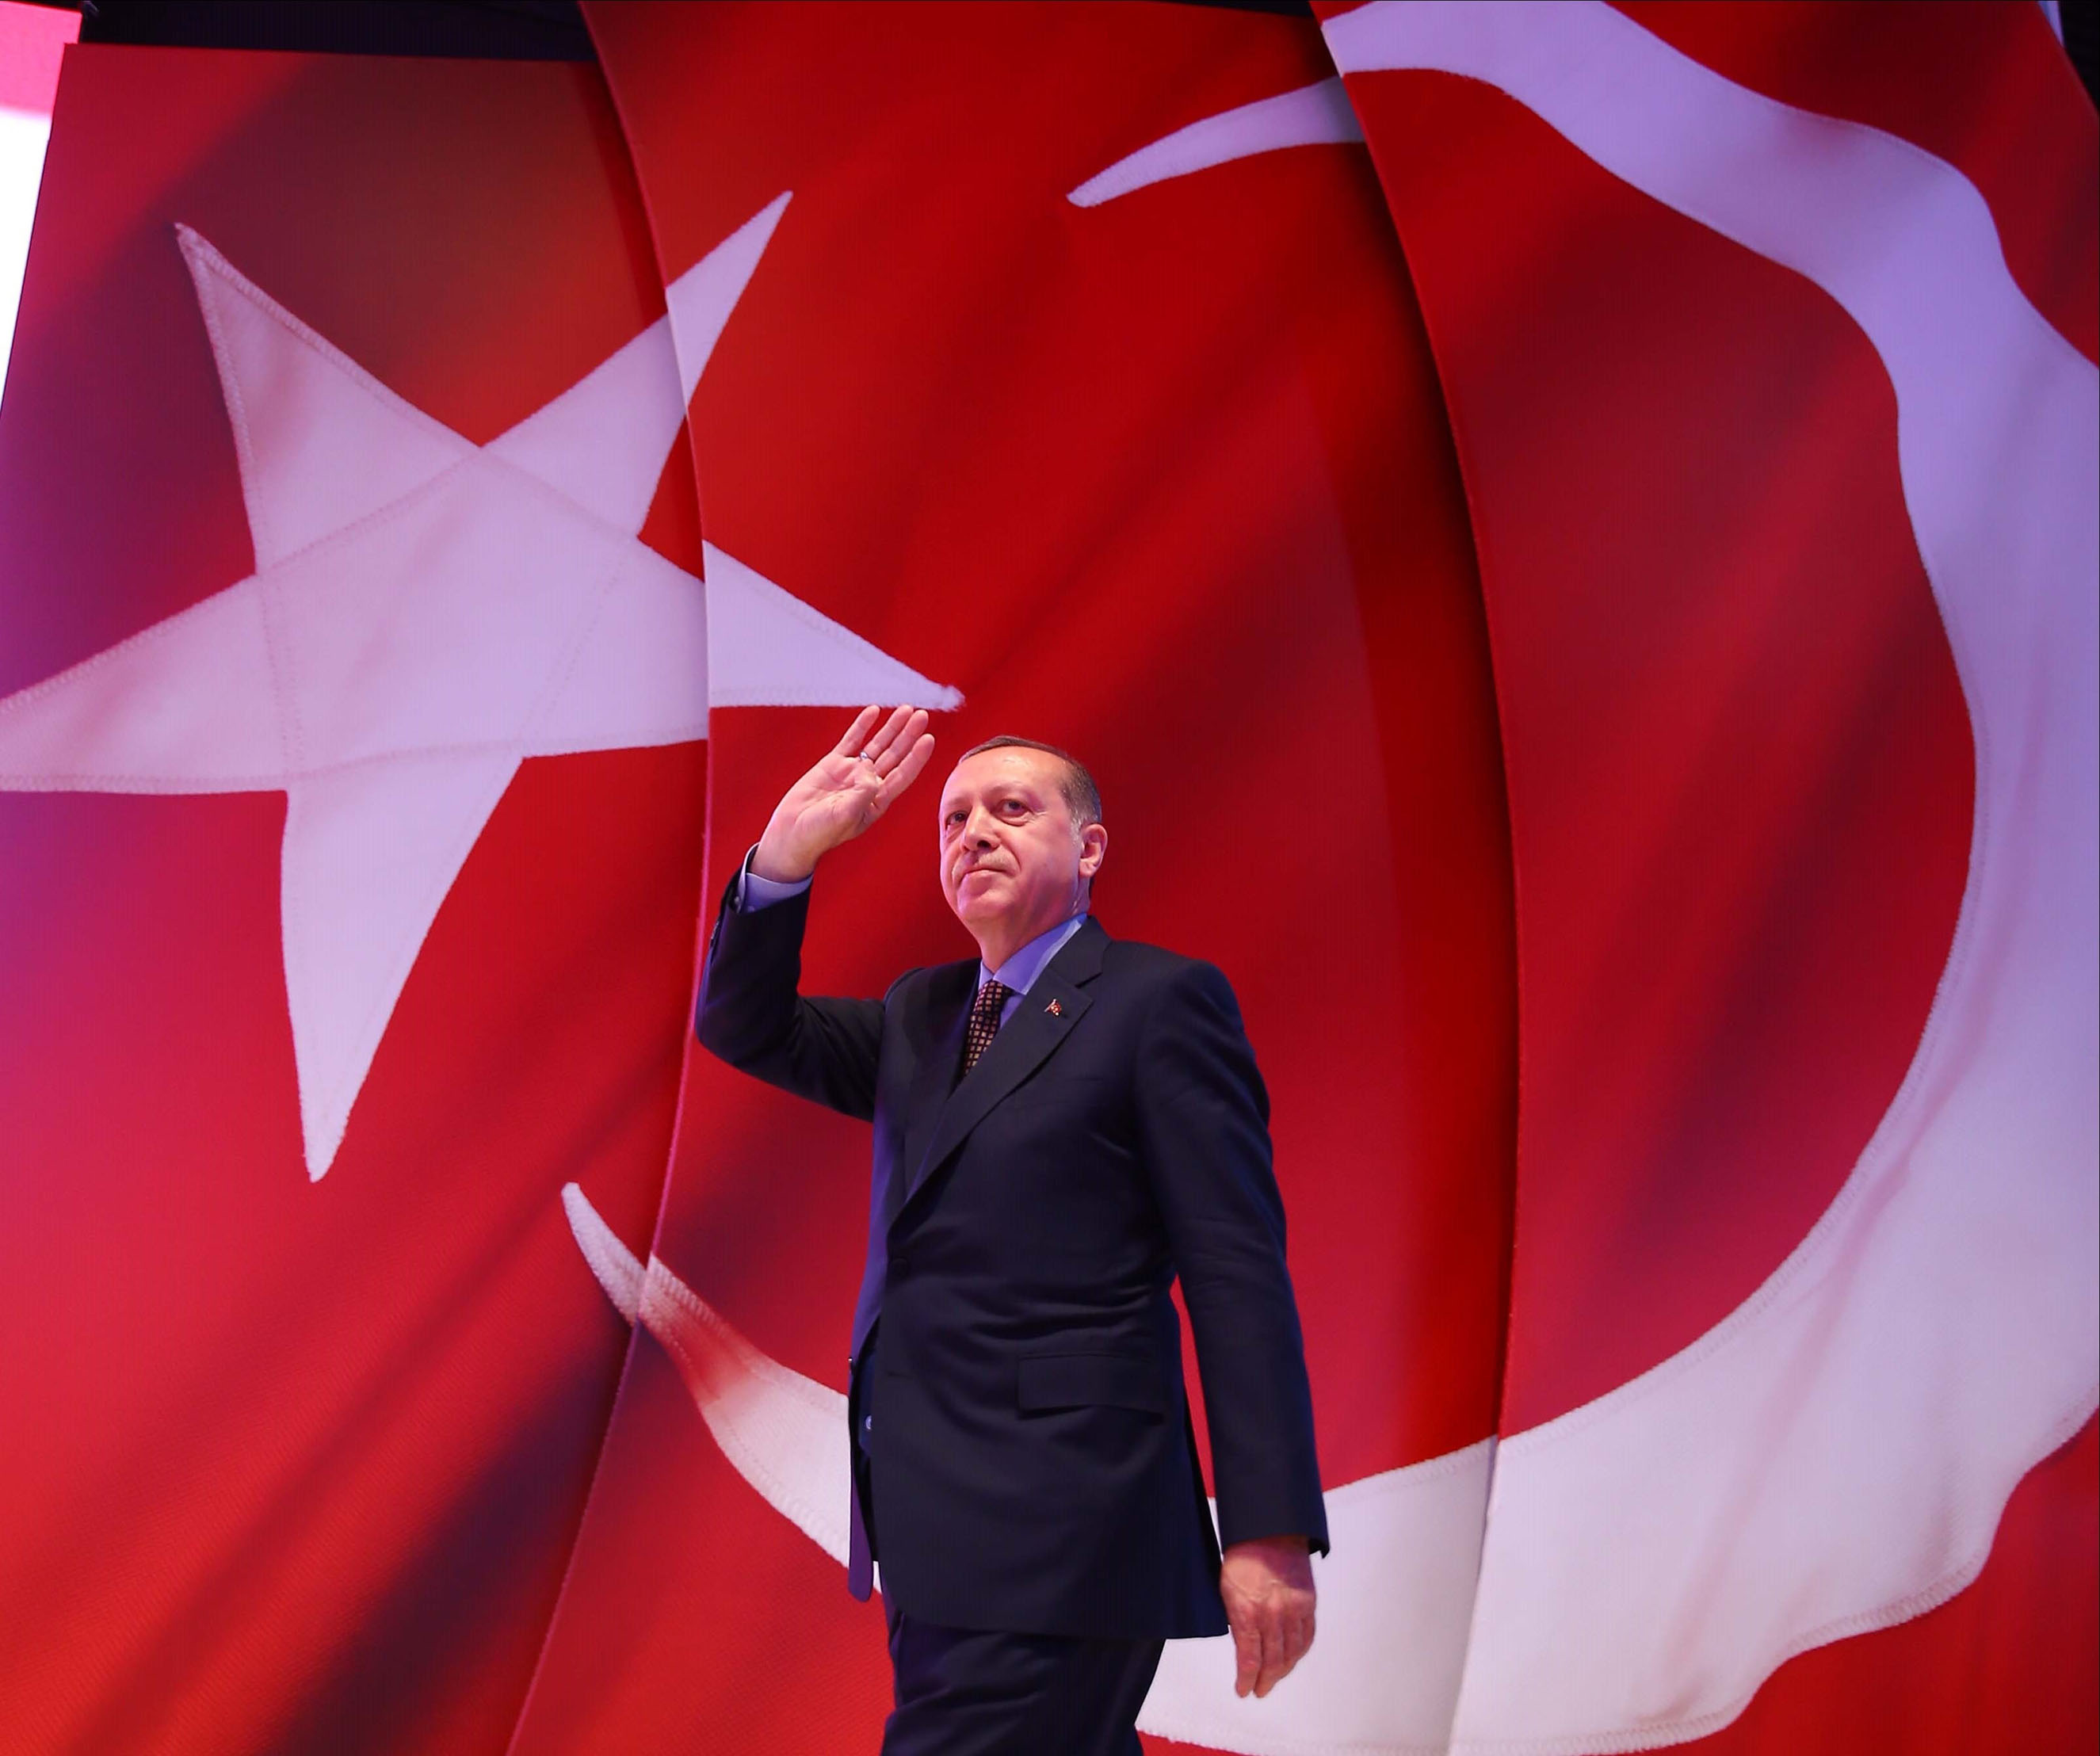 اردوغان